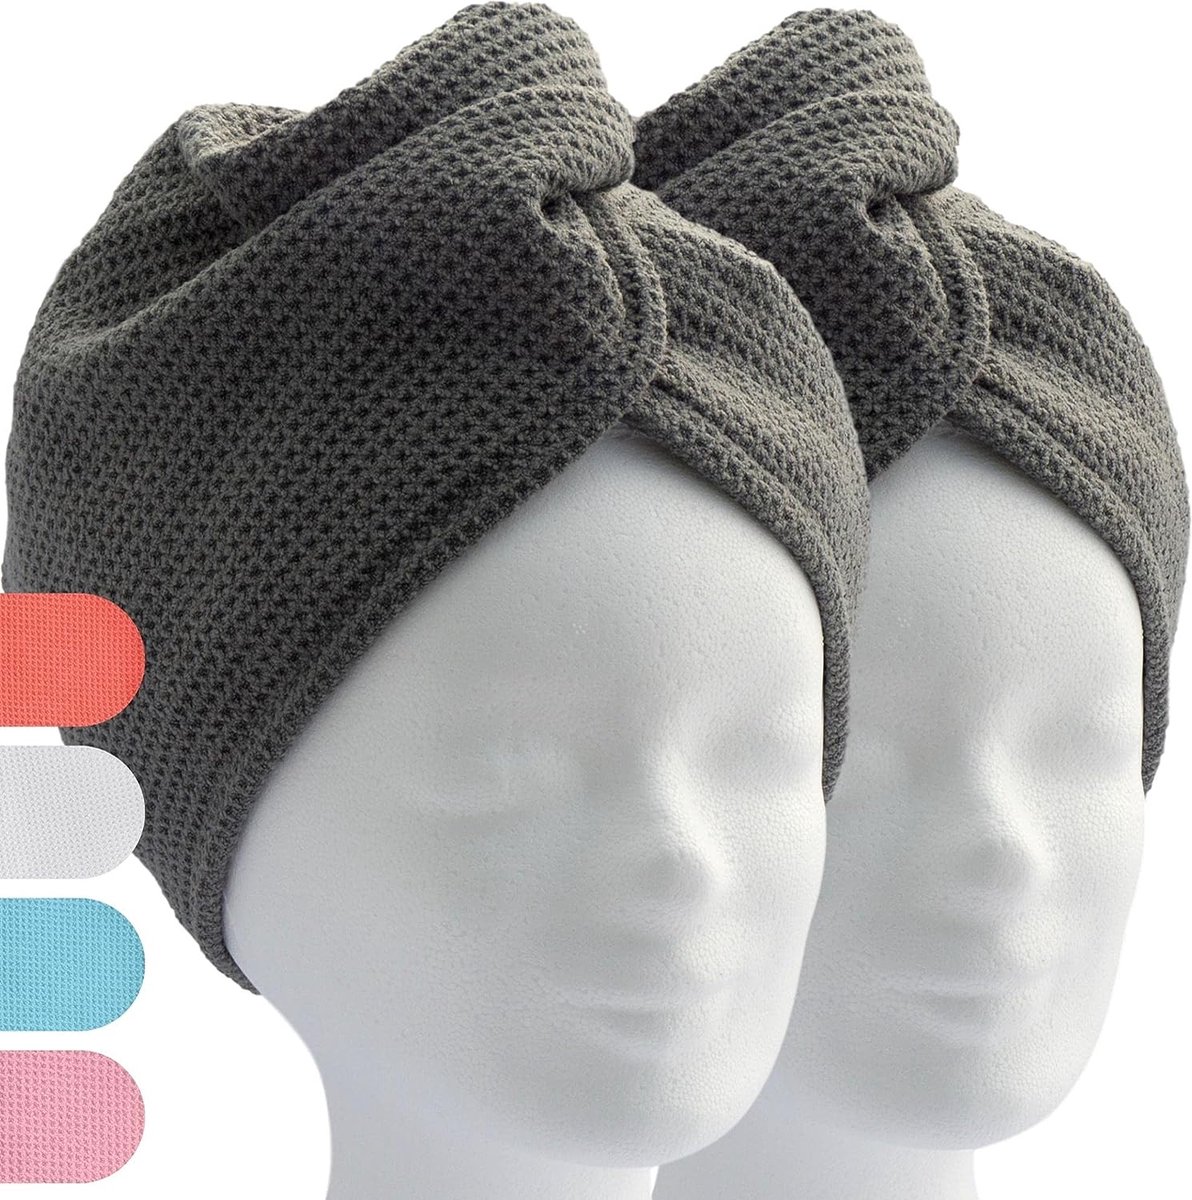 haartulband, tulband handdoek met knoop (2 stuks, antraciet/grijs) microvezel handdoek voor hoofd en lang haar